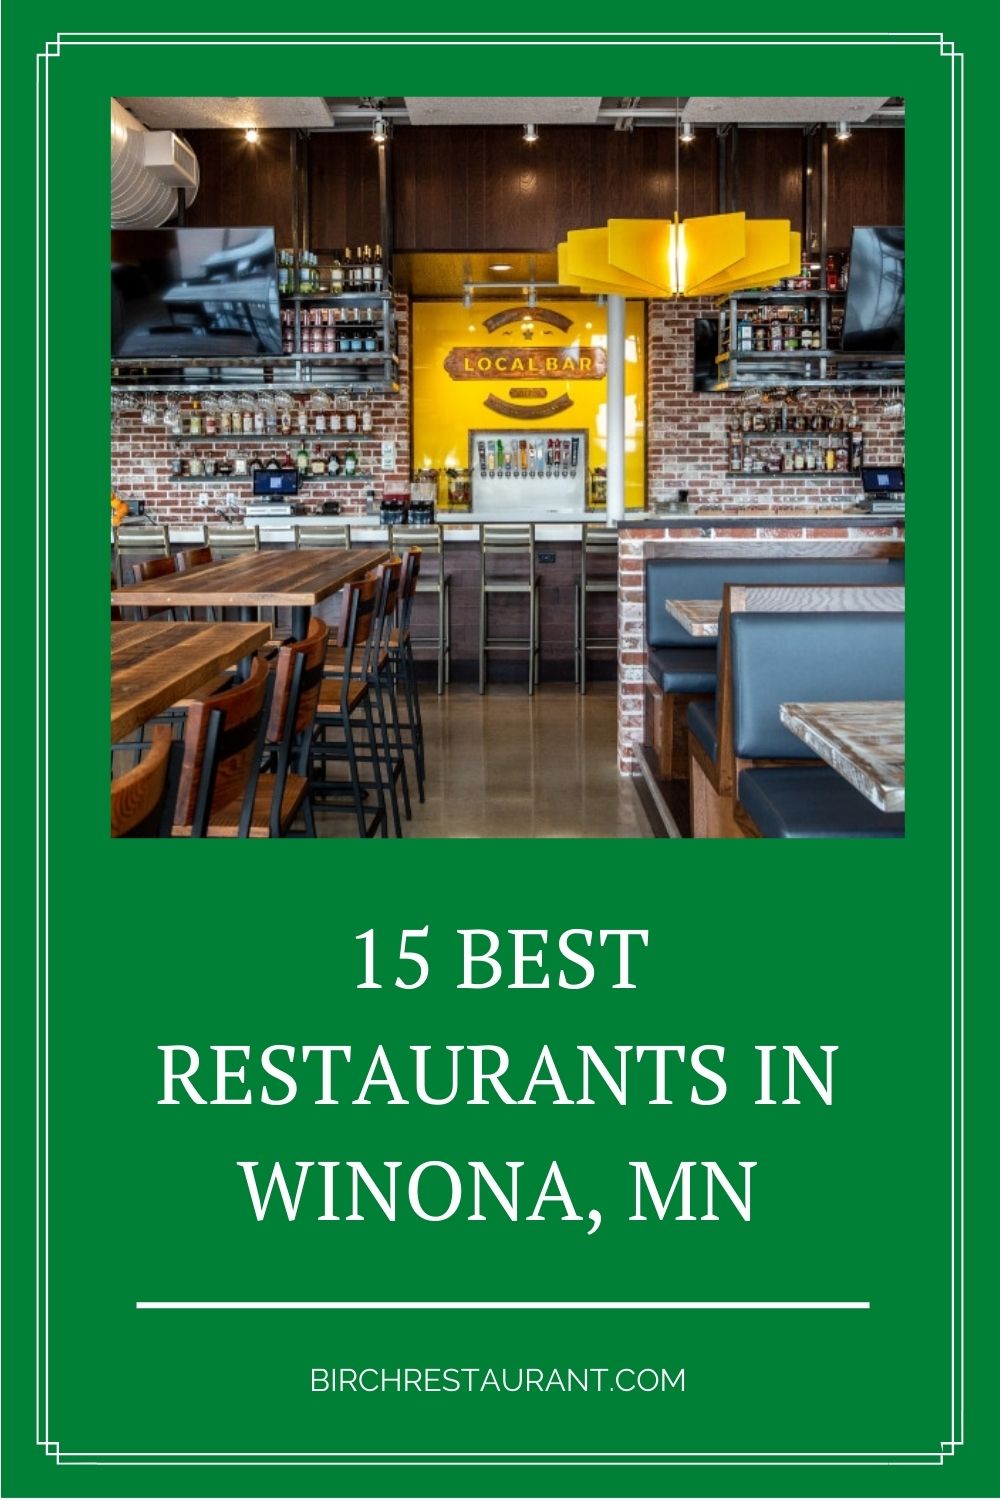 Best Restaurants in Winona